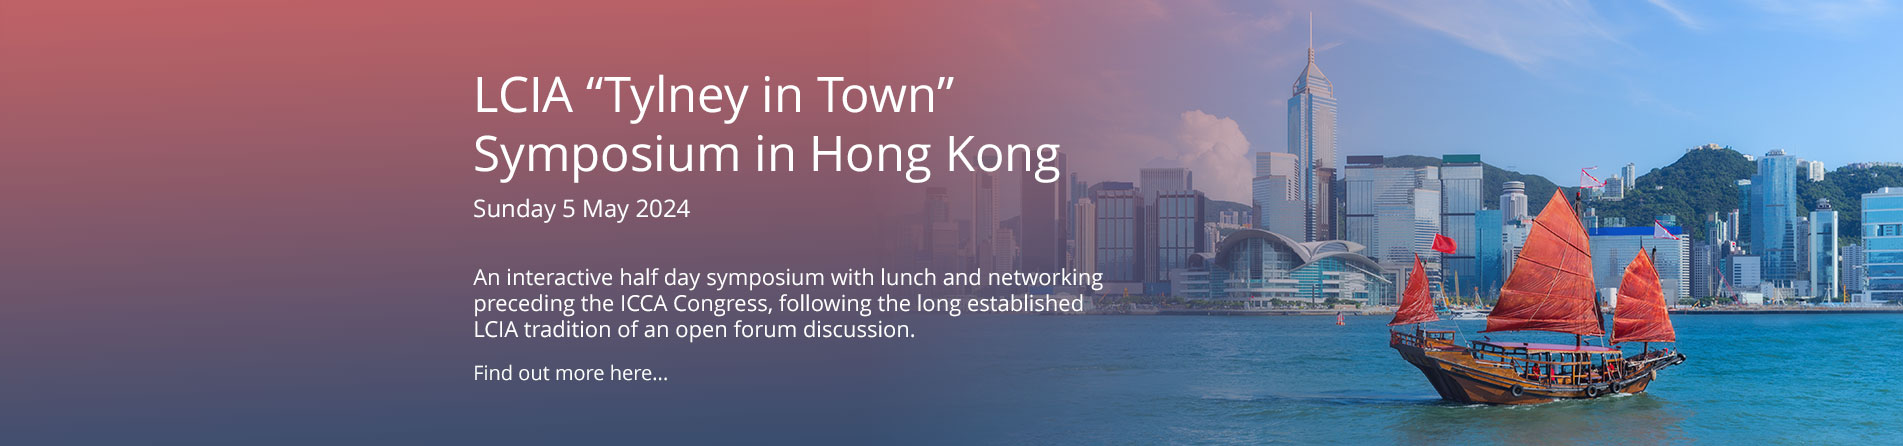 LCIA Symposium in Hong Kong on Sunday 5 May 2024